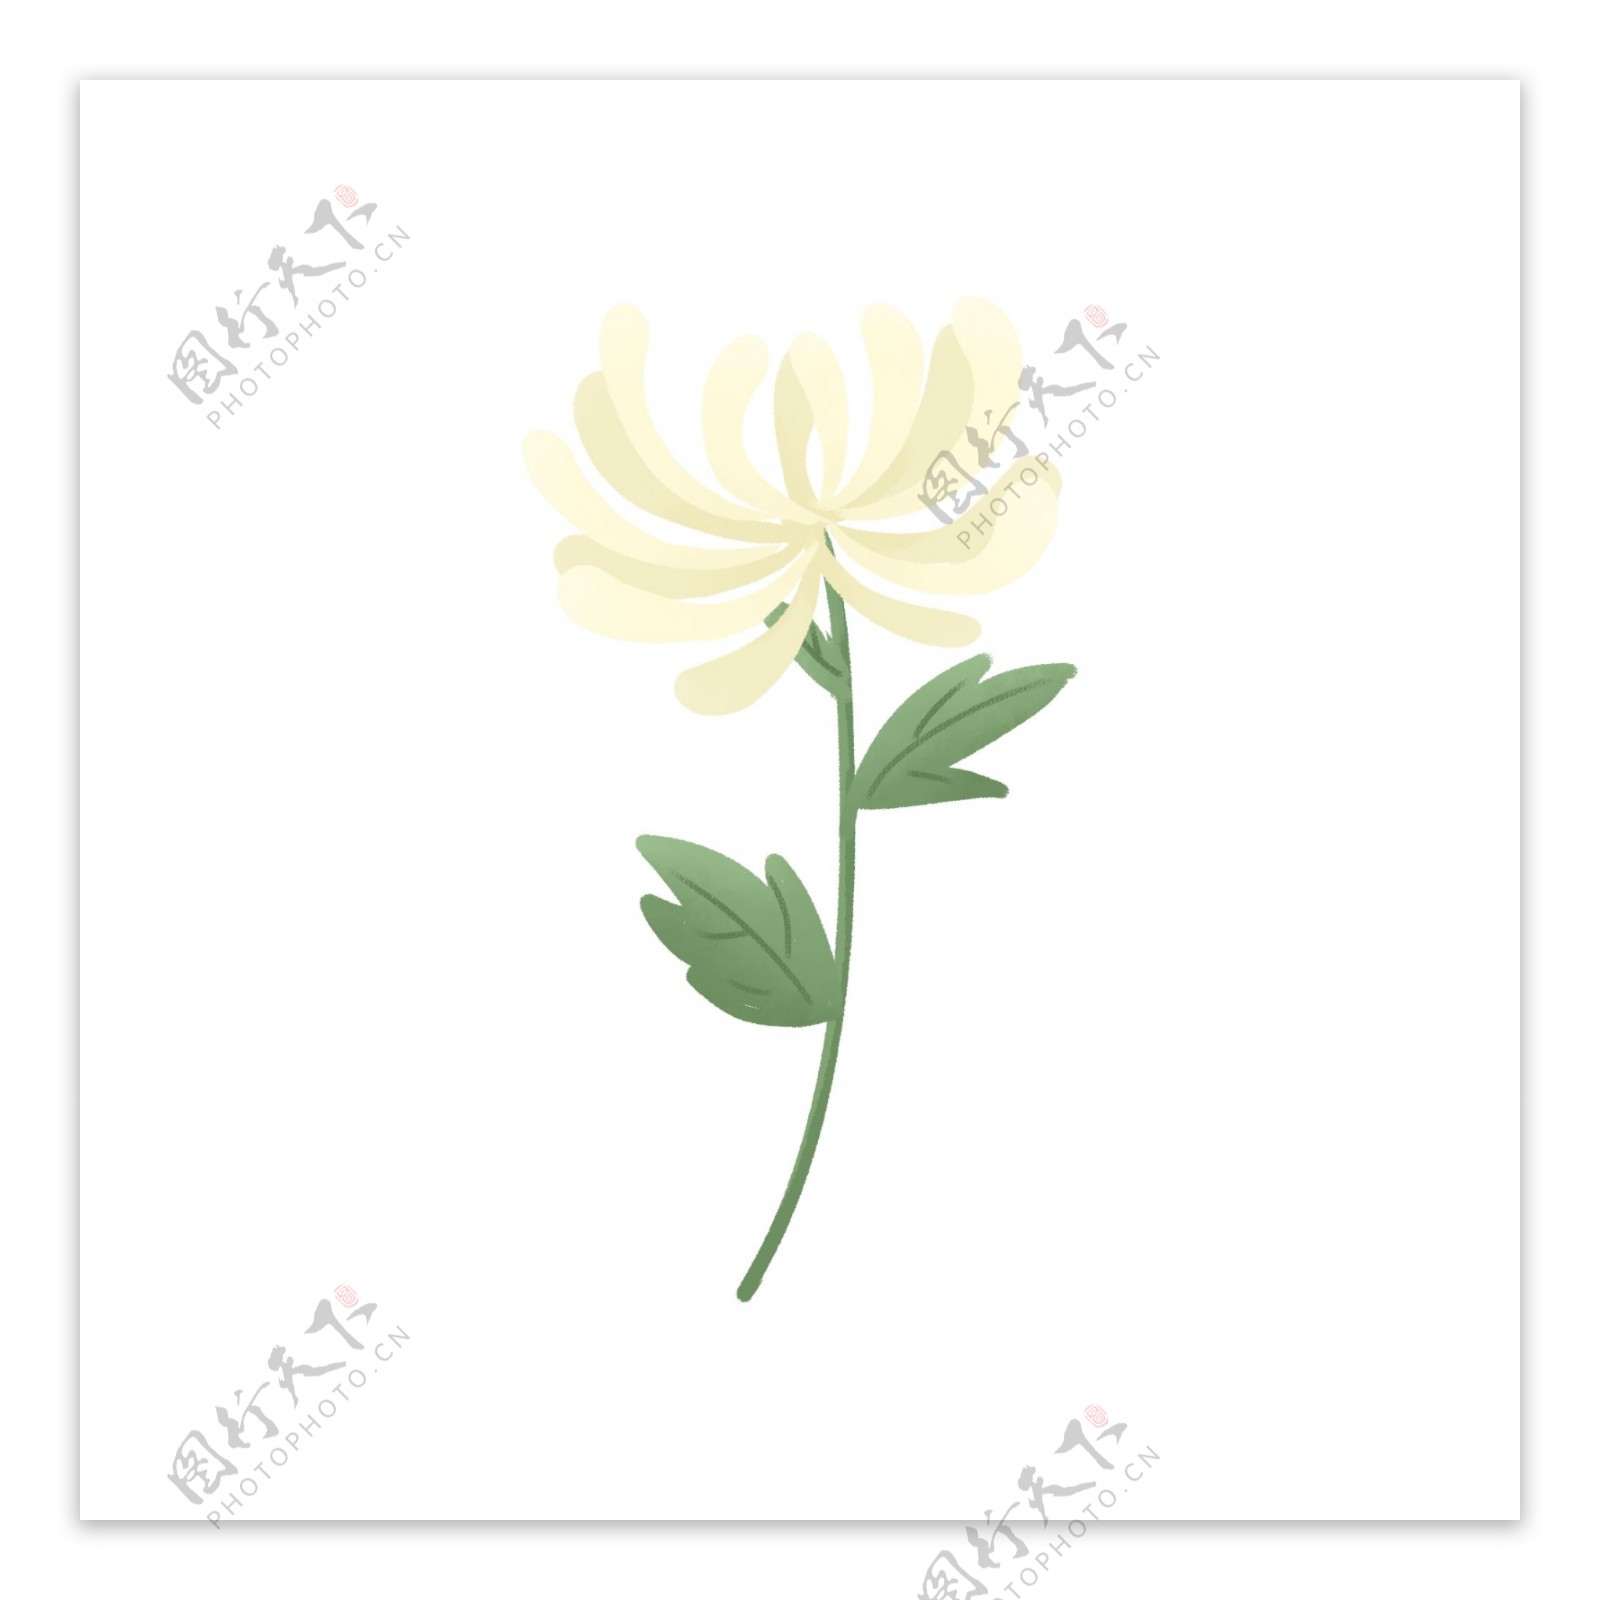 清明清明节祭拜祖先的一枝白色菊花